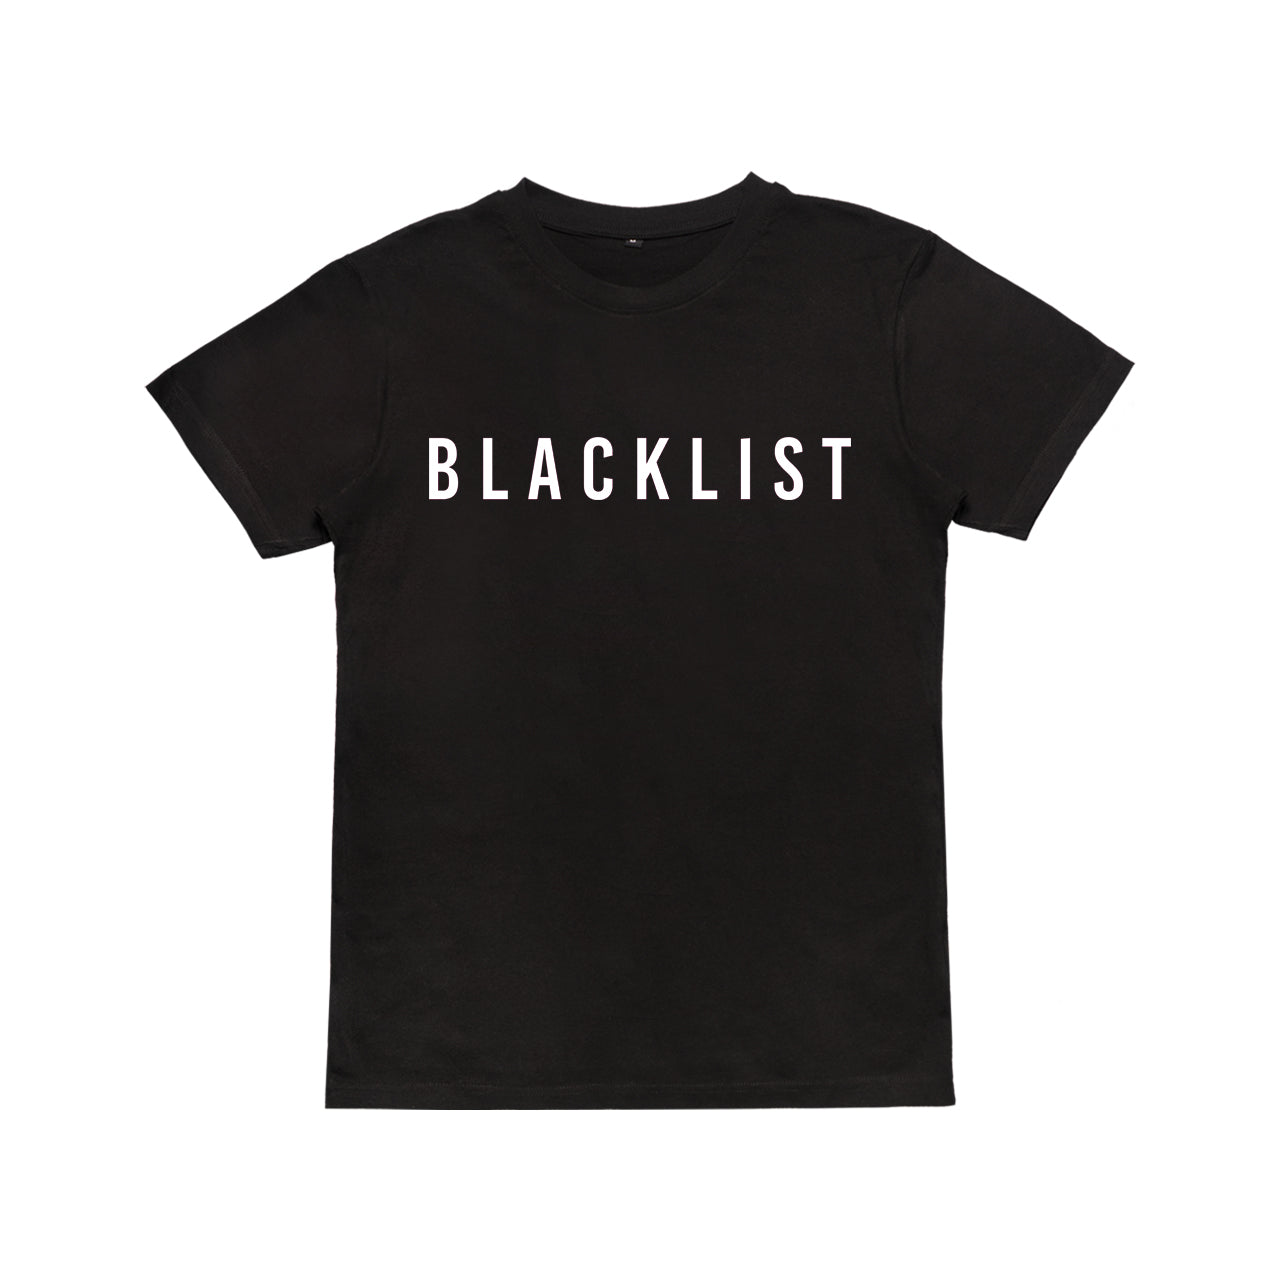 Blacklist - Basic Blacklist T-Shirt Basic 2020